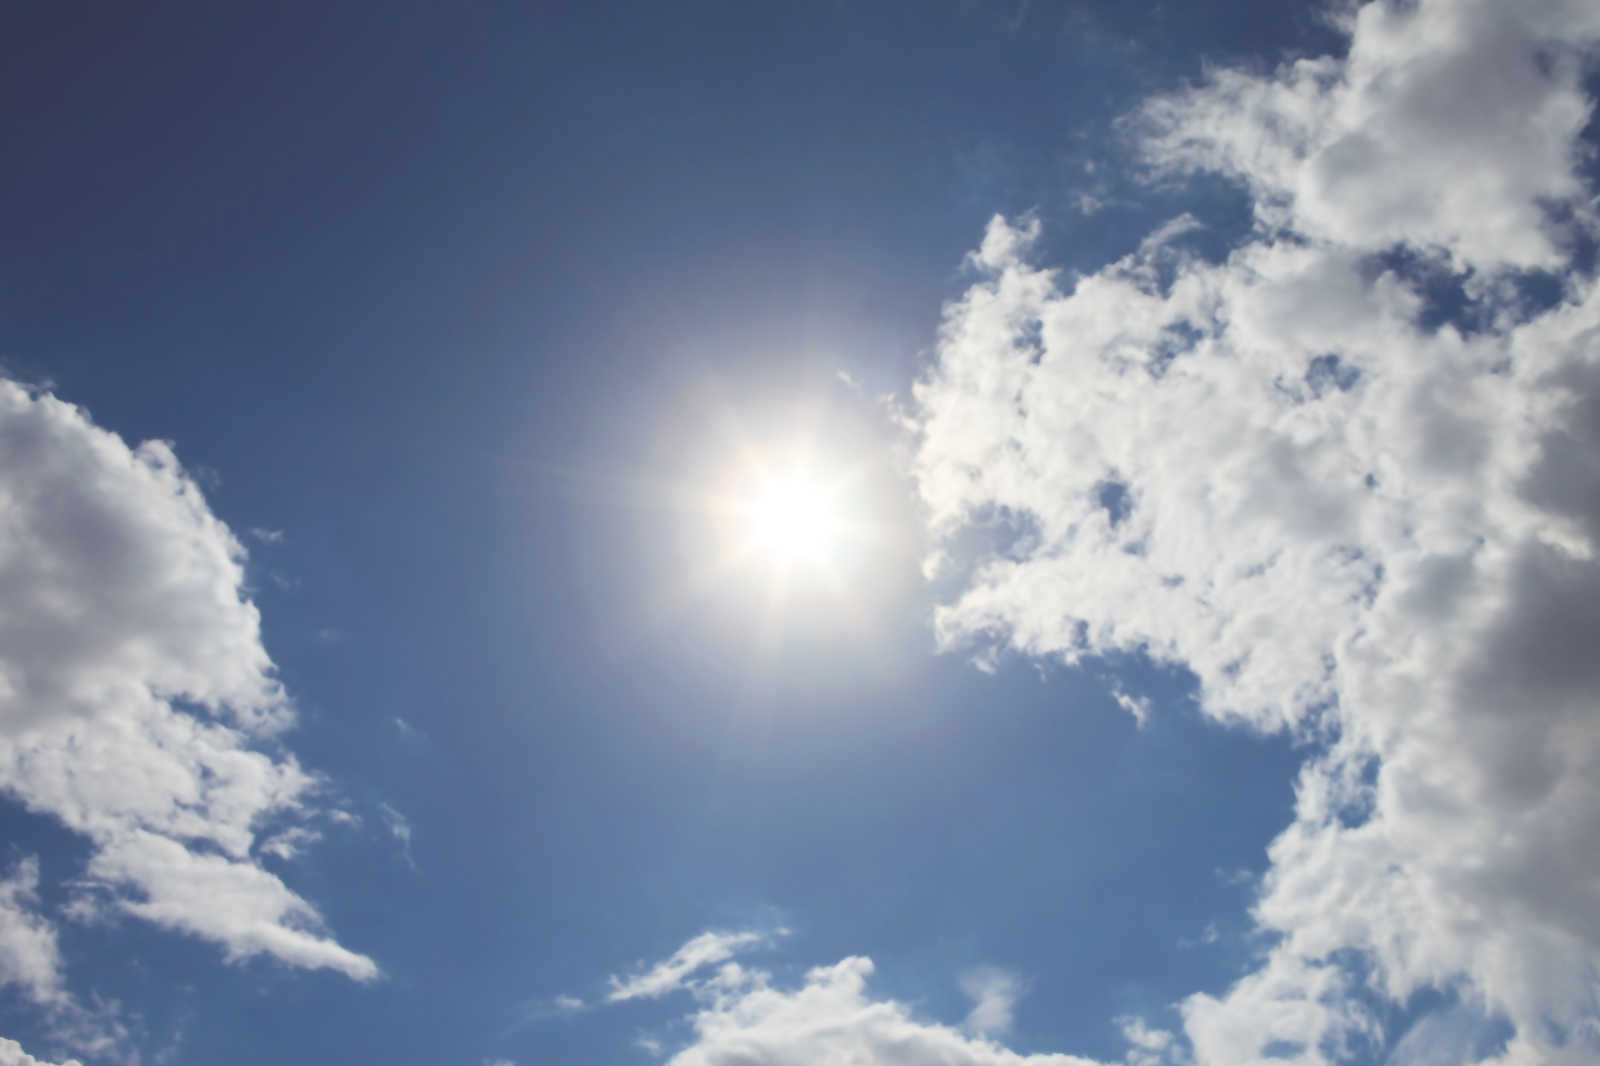             Himmel blau - Leinwandbild Sonnenschein & blauem Wolkenhimmel – 1,20 m x 0,80 m
        